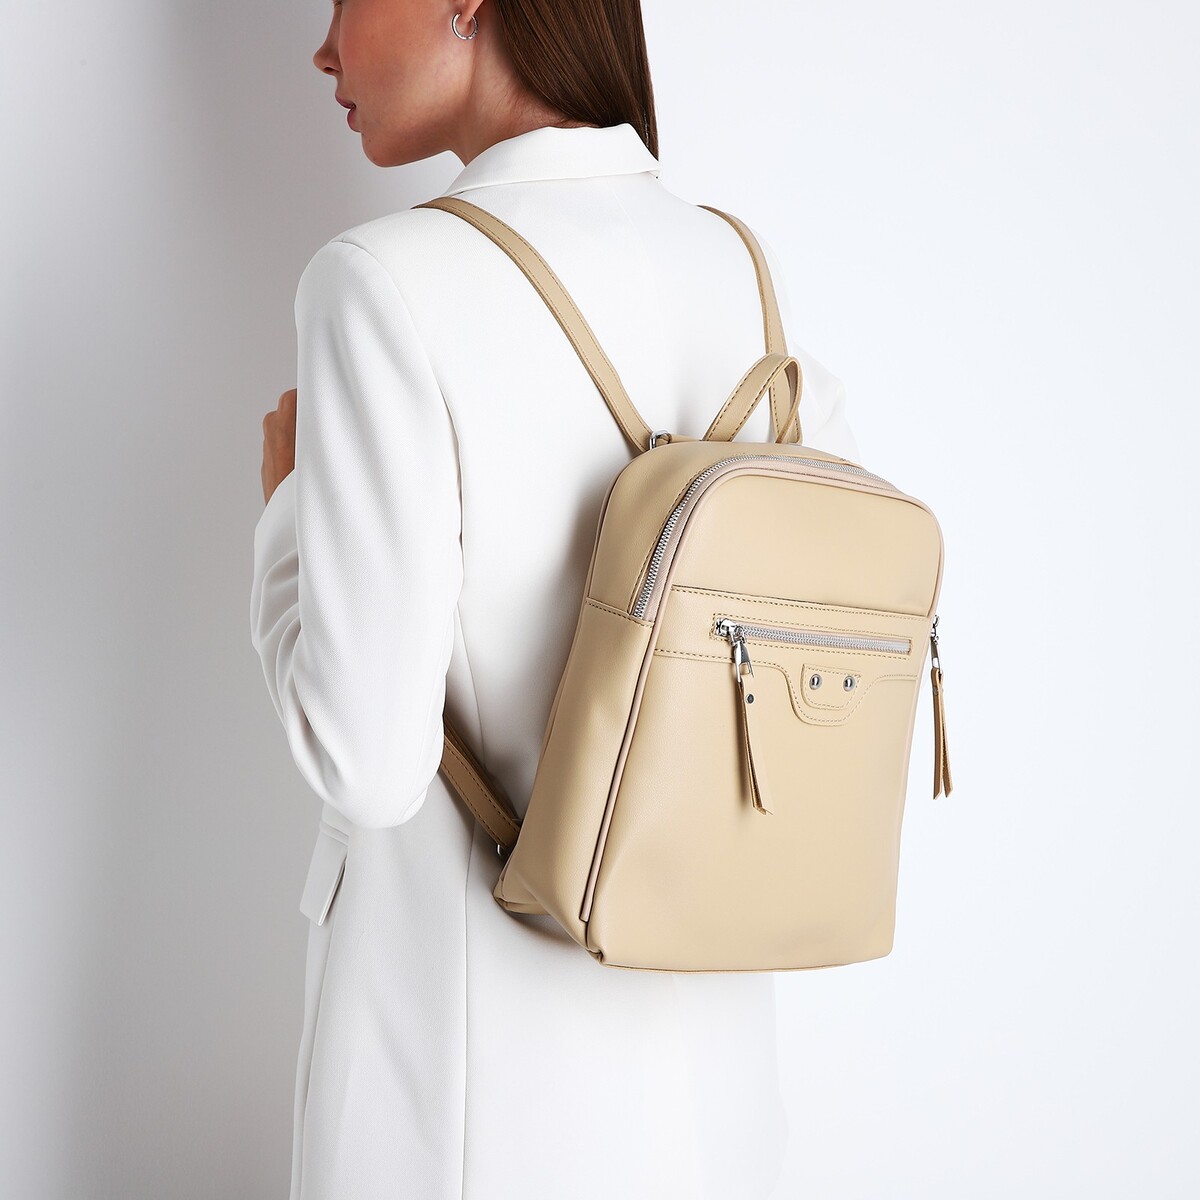 Рюкзак женский из искусственной кожи на молнии, 3 кармана, цвет бежевый рюкзак школьный из текстиля на молнии 4 кармана кошелек бежевый